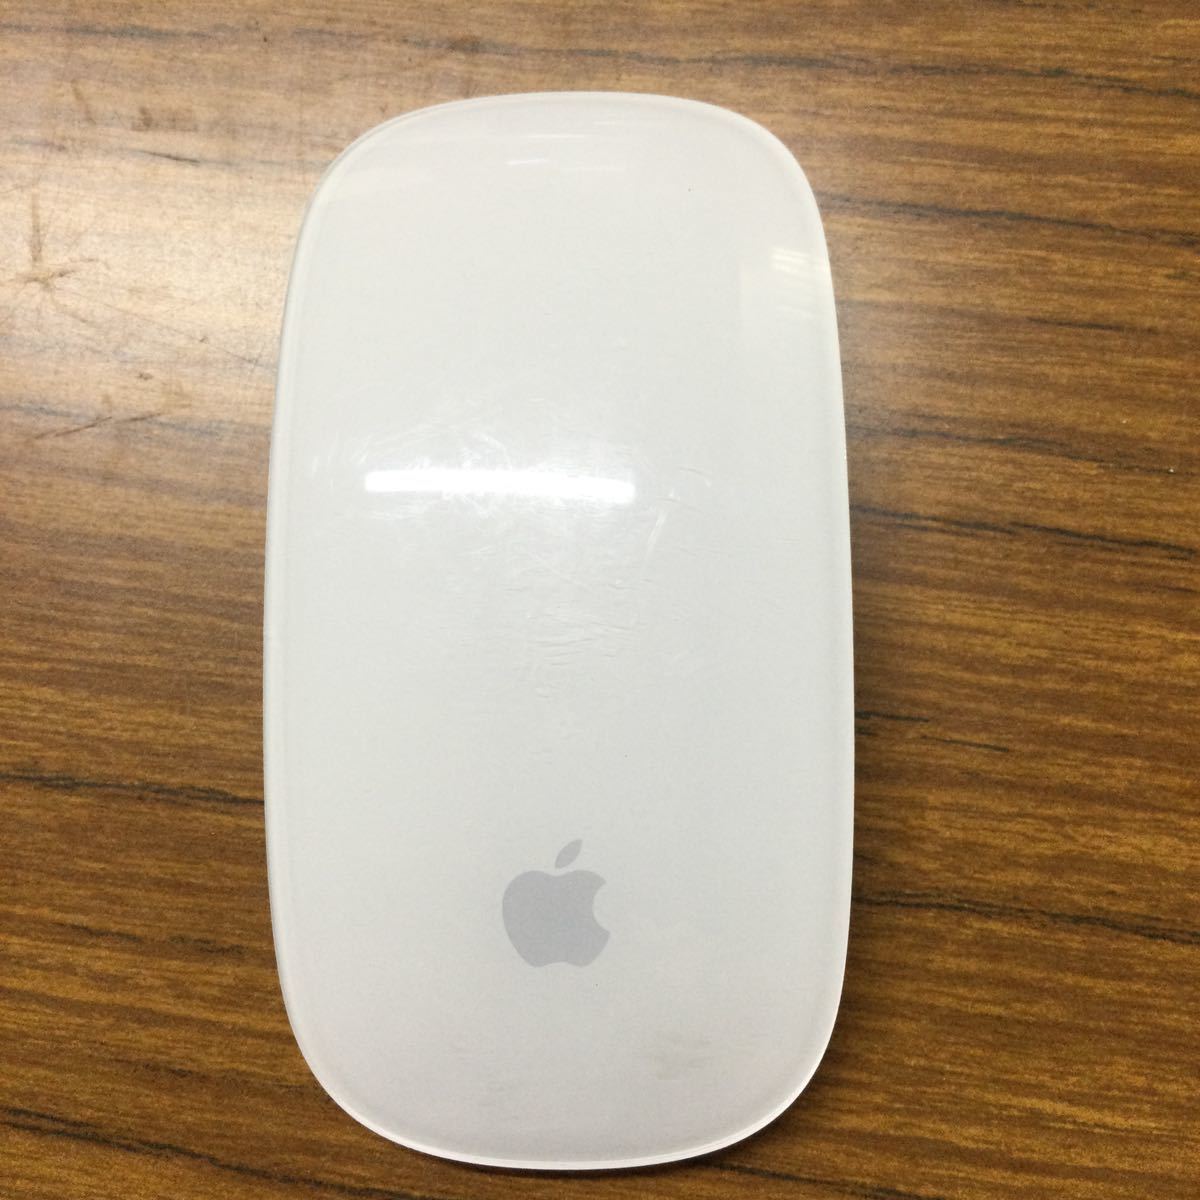 USED★Apple アップル A1296 3Vdc Magic Mouse マジックマウス Wireless ワイヤレス Bluetooth 無線 電池式 動作確認済★3_画像1